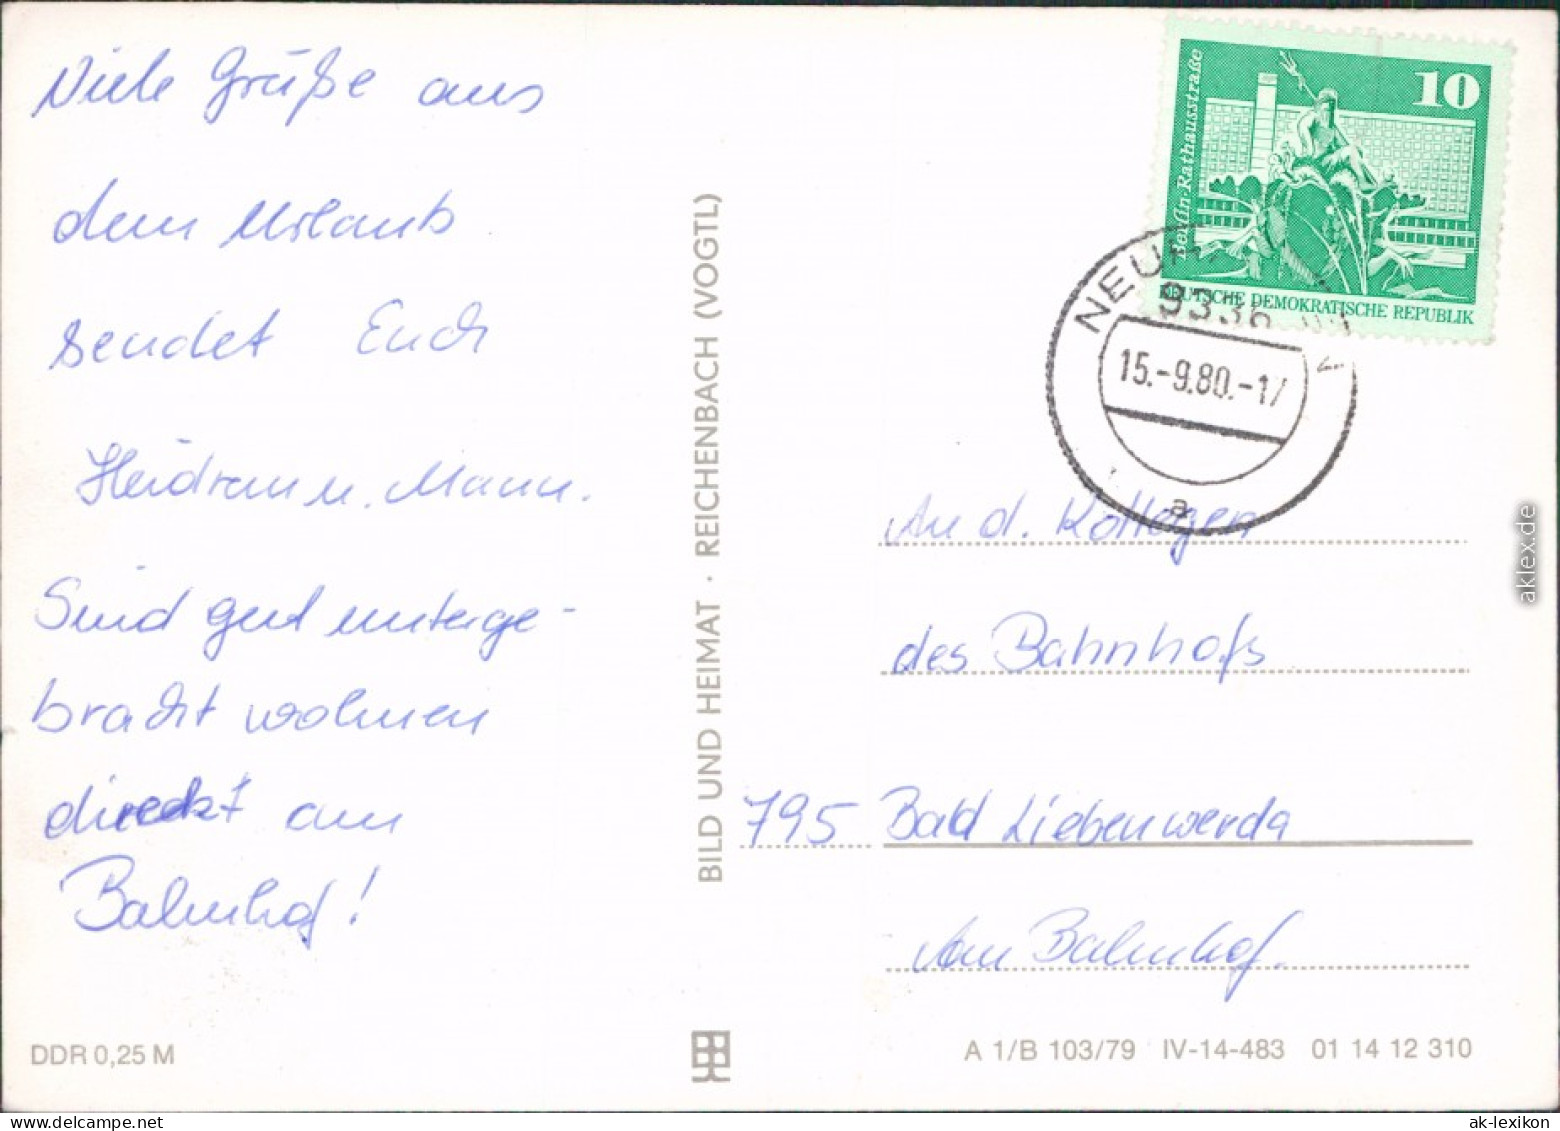 Neuhausen (Erzgebirge)   Schwartenbergbaude, Dachsbaude Und Kammbaude 1980 - Neuhausen (Erzgeb.)